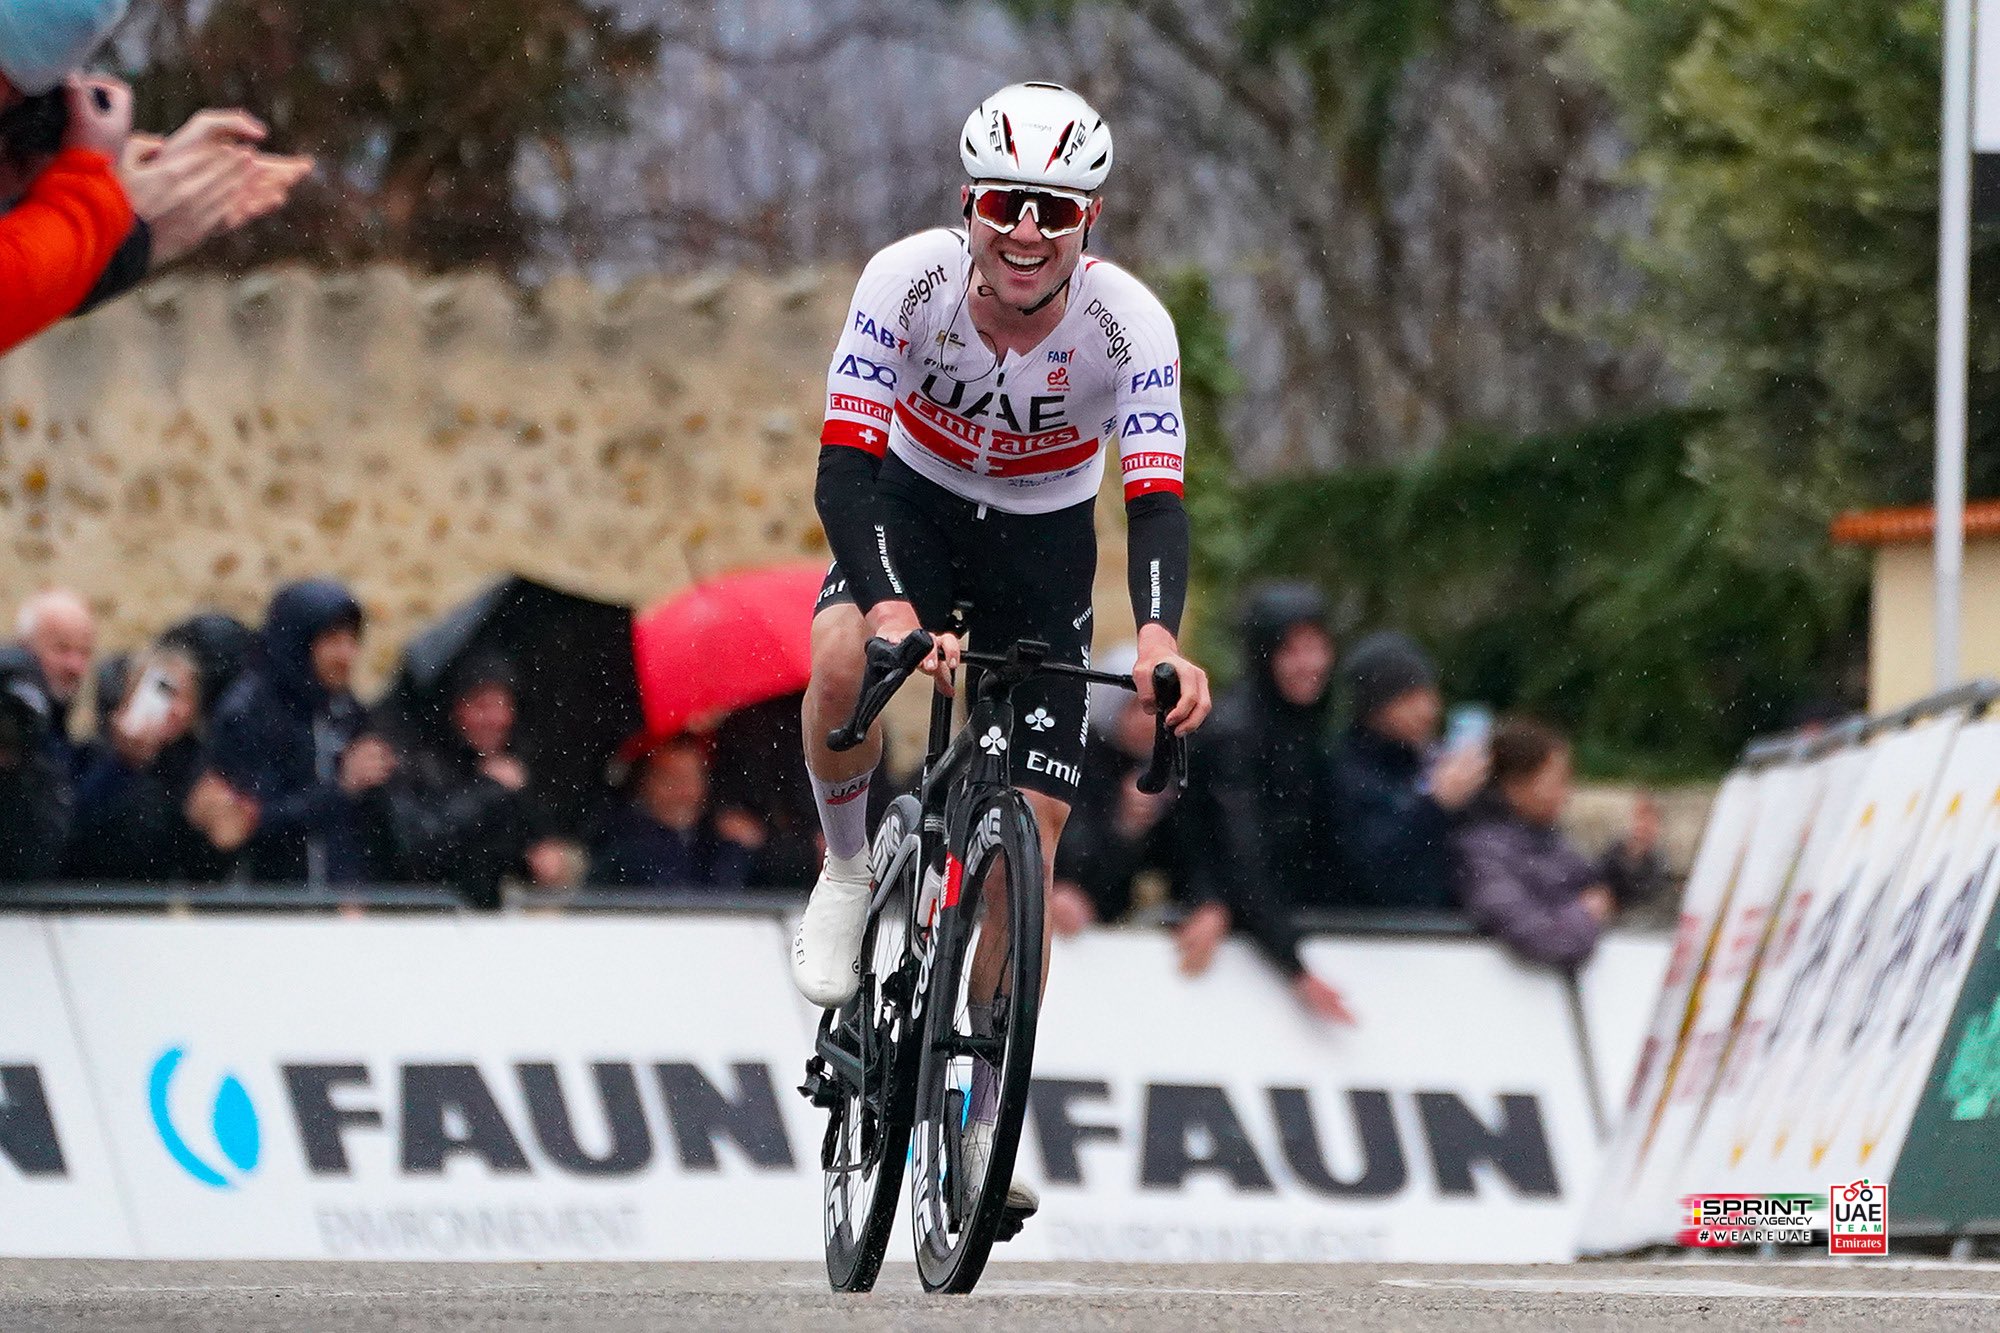 Марк Хирши первым пересёк финишную черту однодневной велогонки Faun Drôme Classic